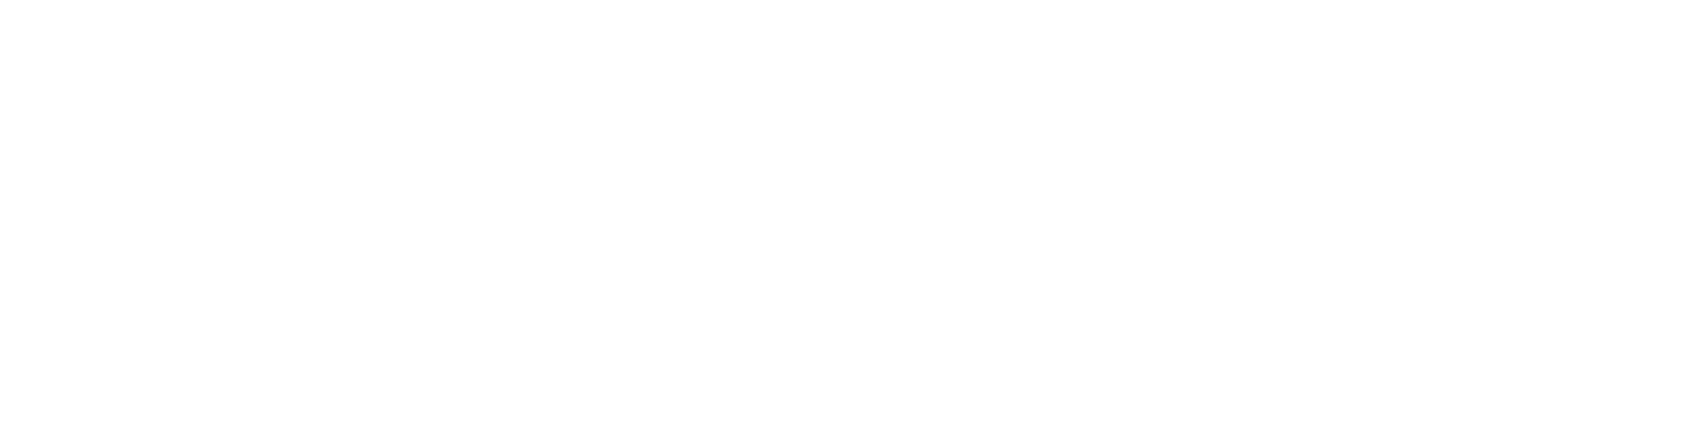 Dansk design, dansk produktion, dansk kvalitet